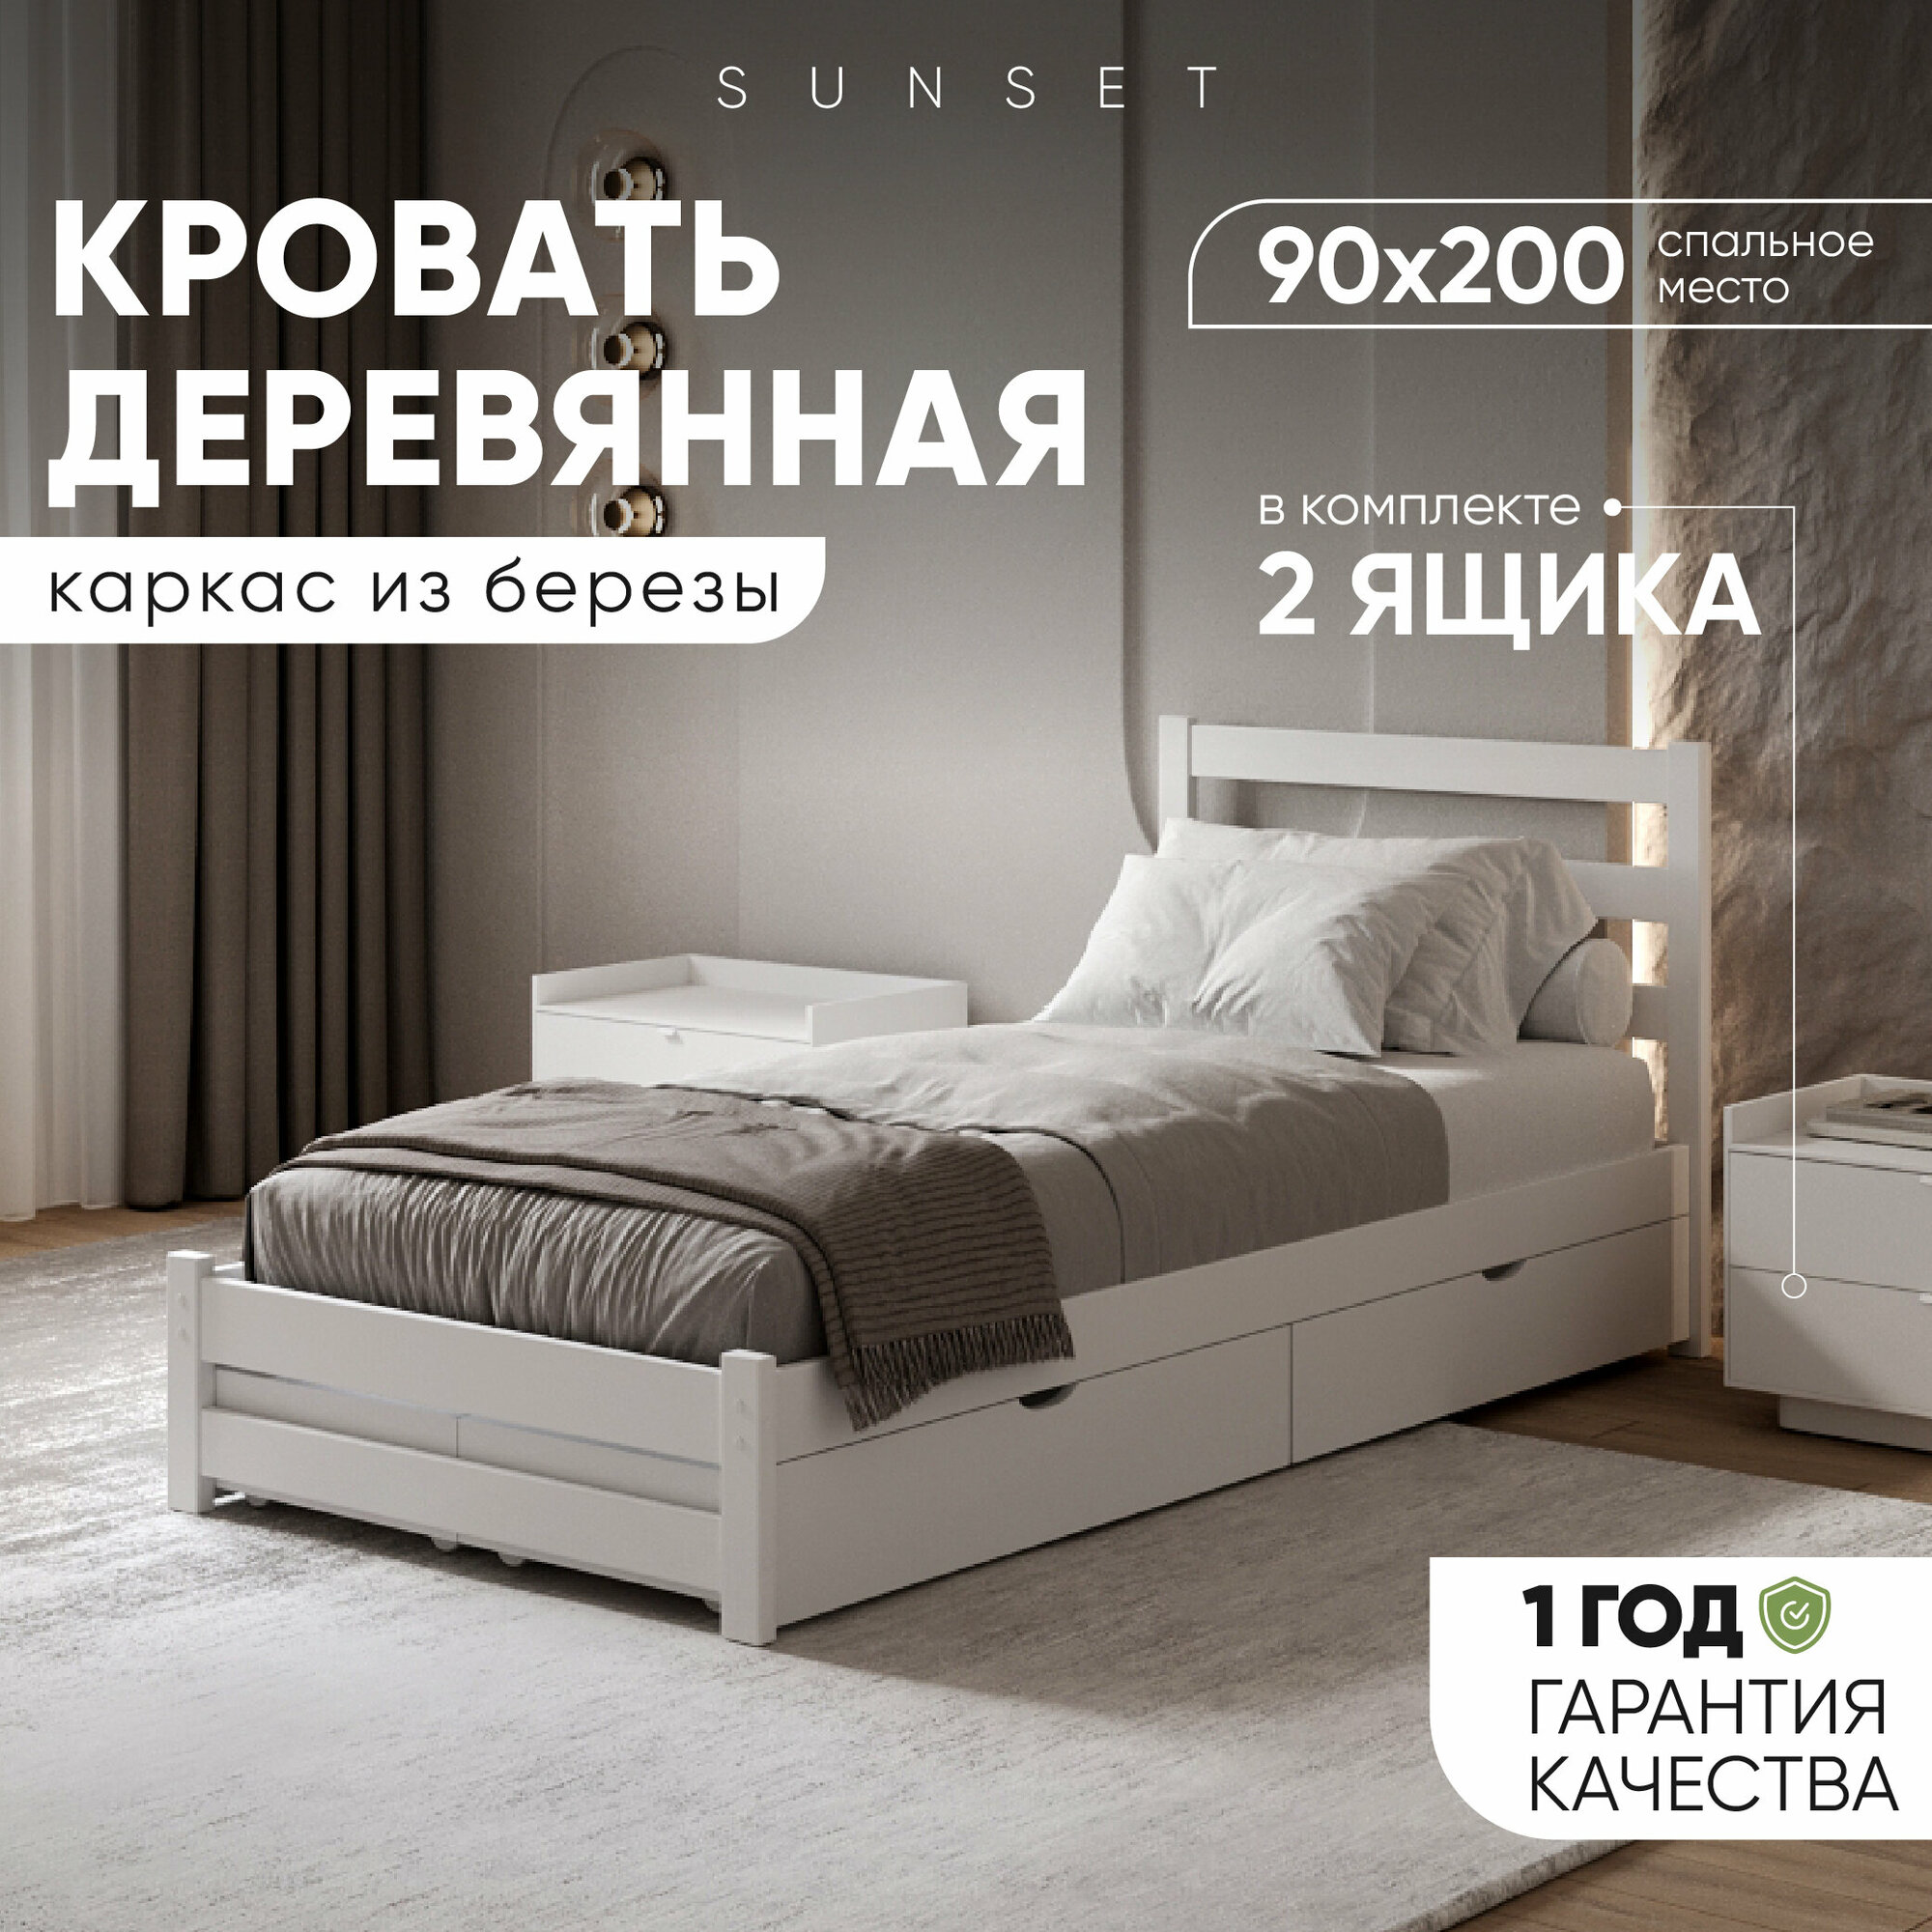 Односпальная кровать 90х200 см с 2 ящиками, цвет Белый, Деревянная из Березы (Аналог Икея)